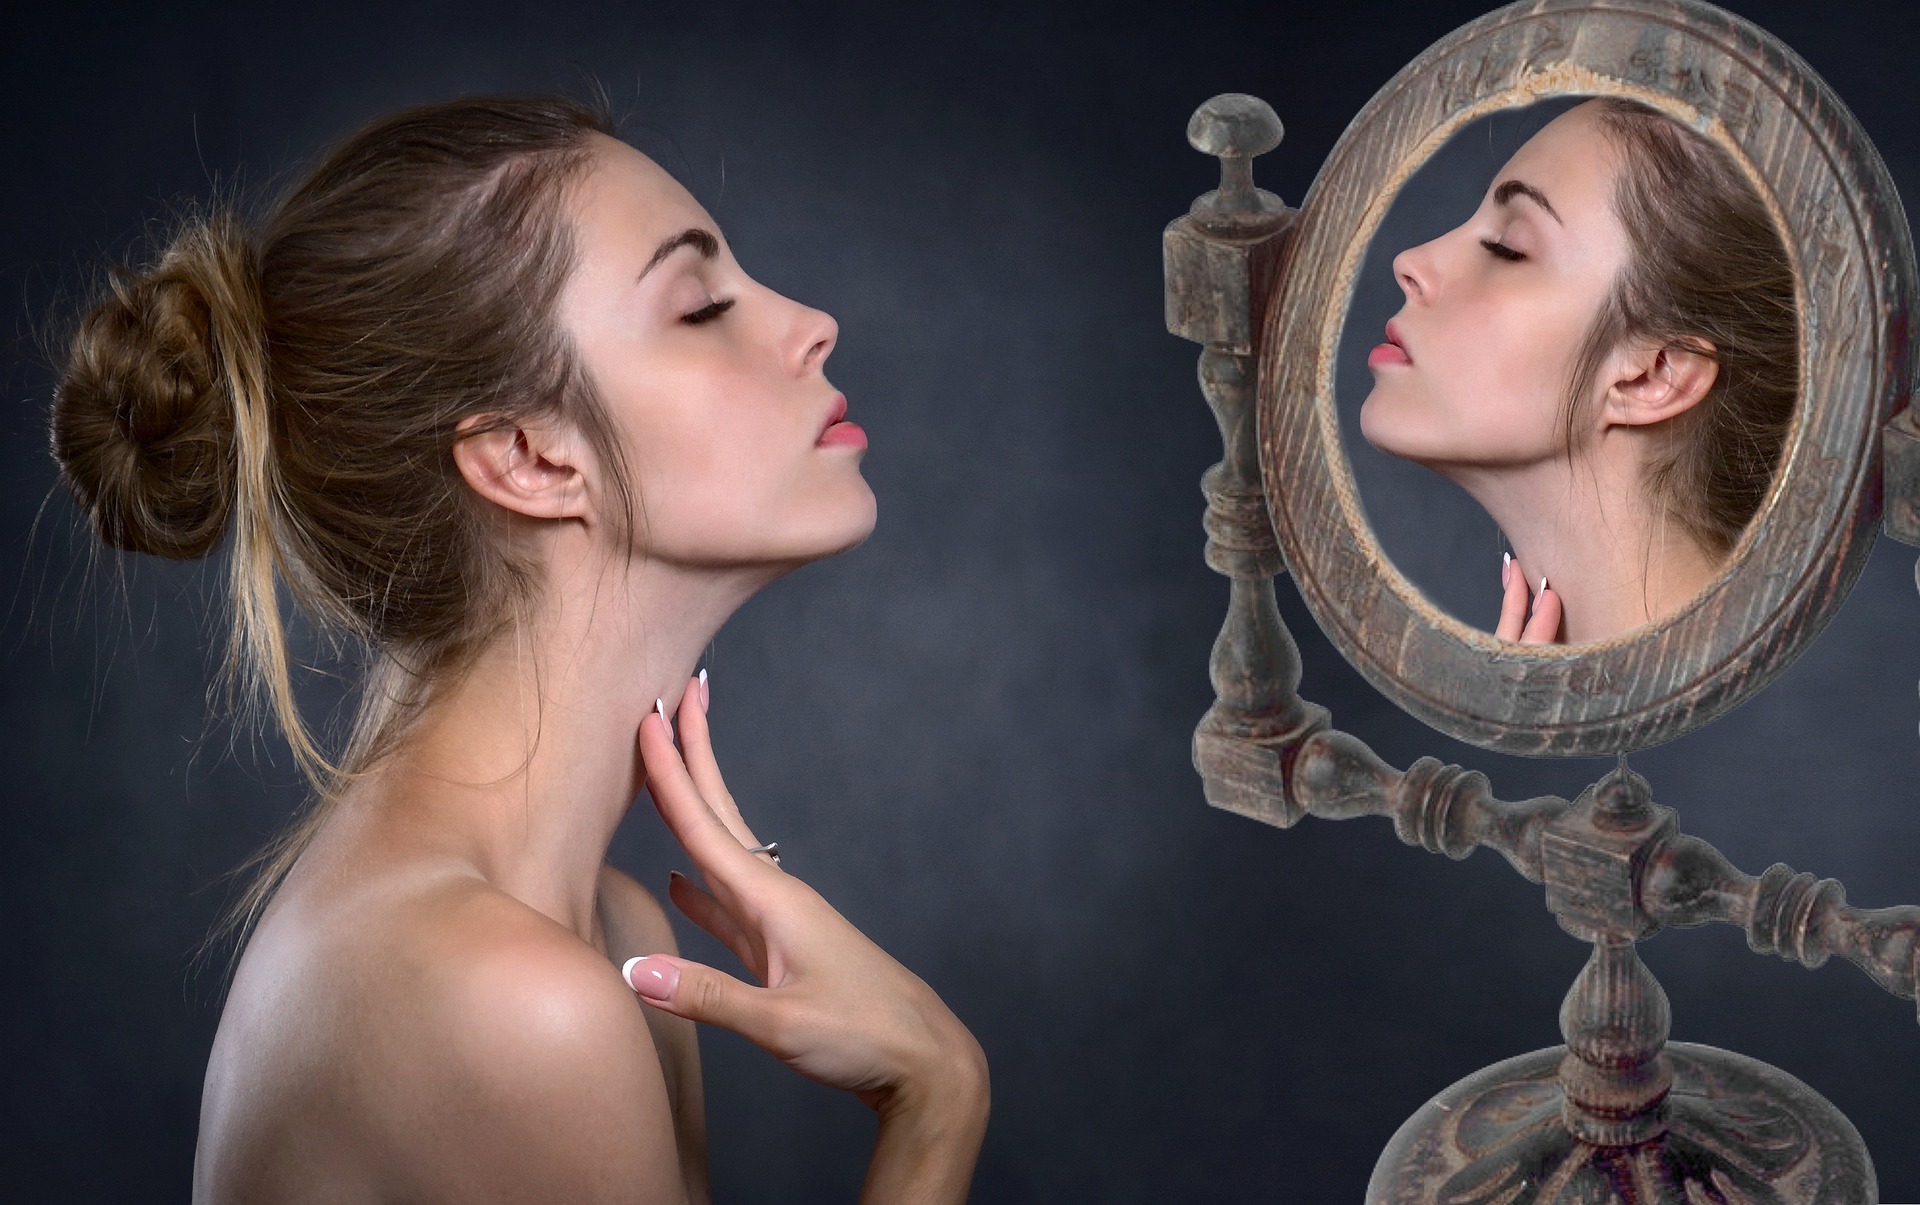 Отражение женщины в зеркале